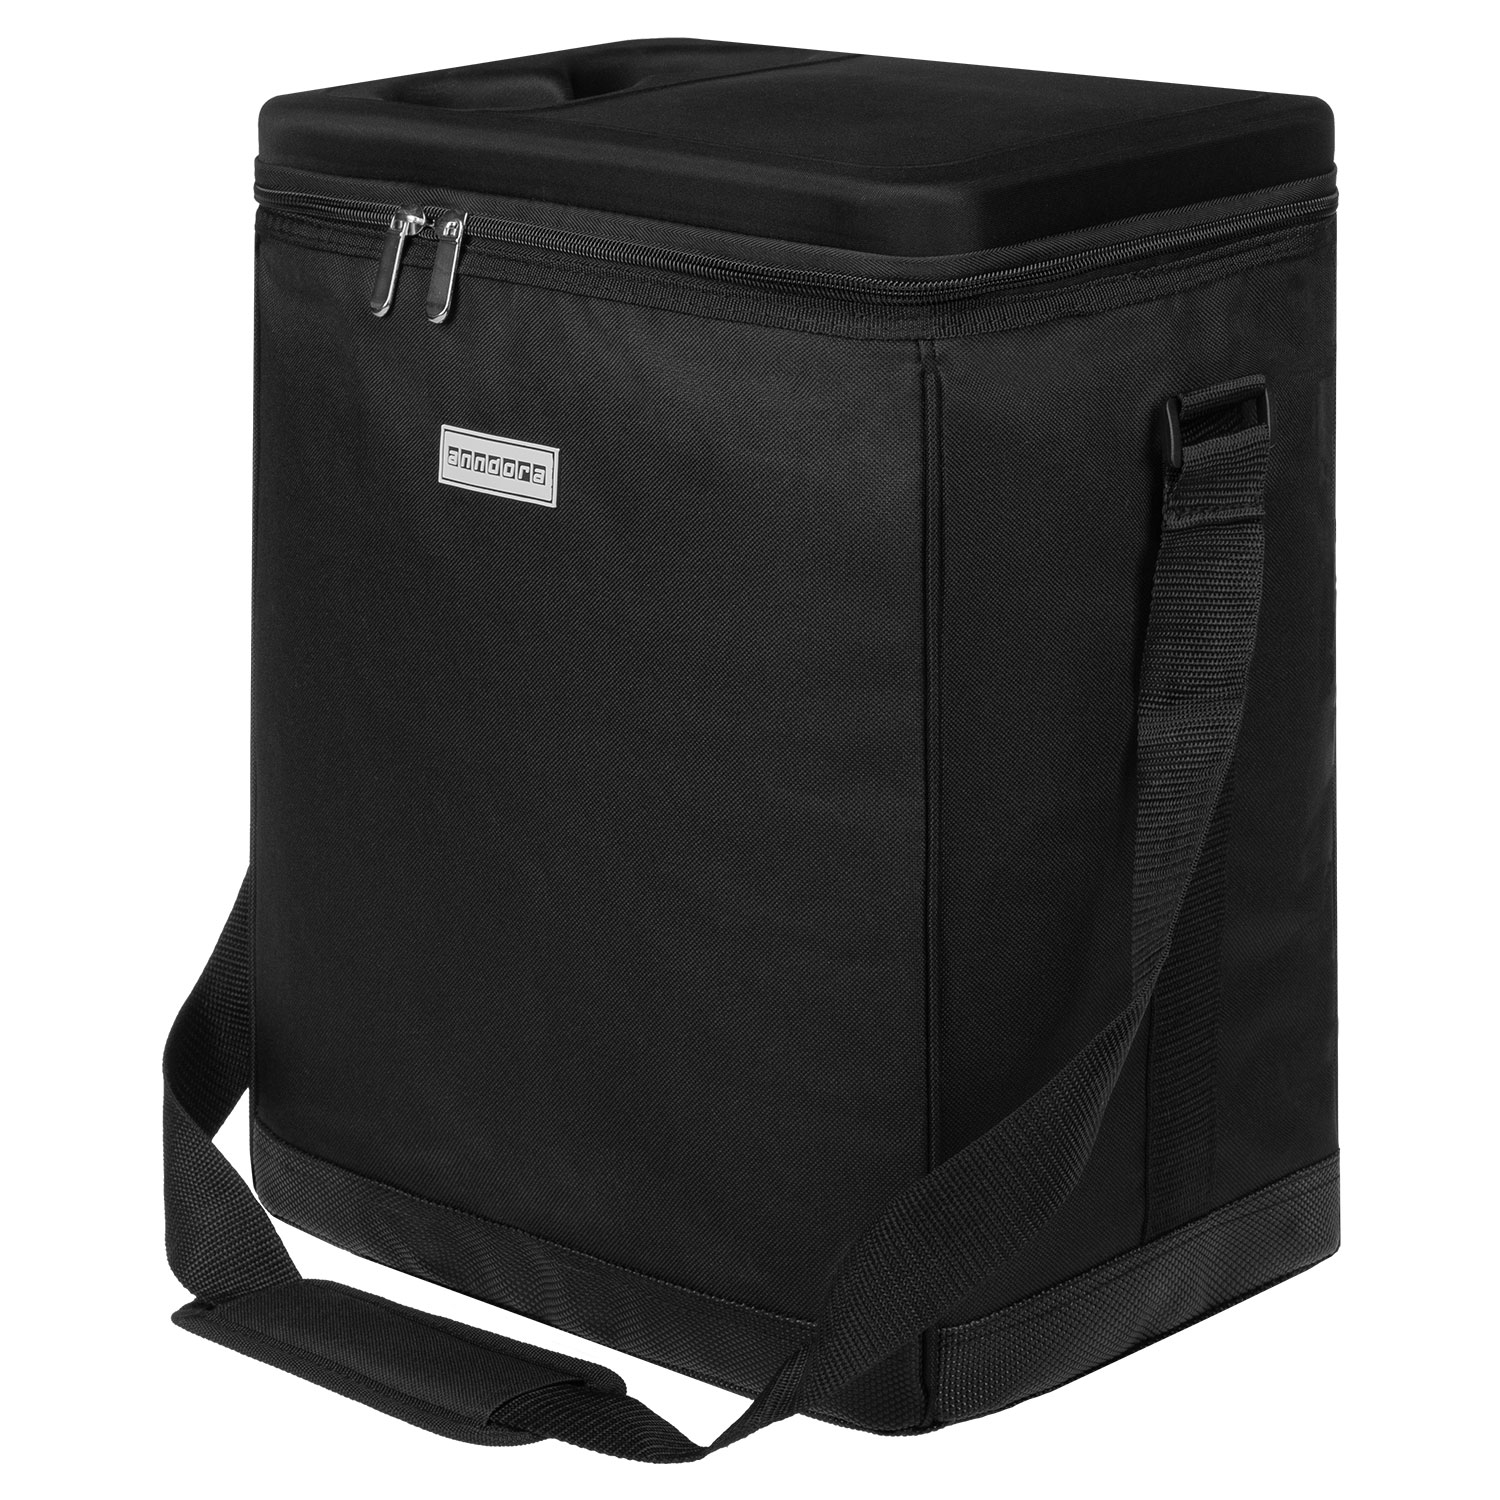 anndora Kühltasche 32 Liter schwarz – Kühleinsatz -reisenthel carrycruiser kompatibel